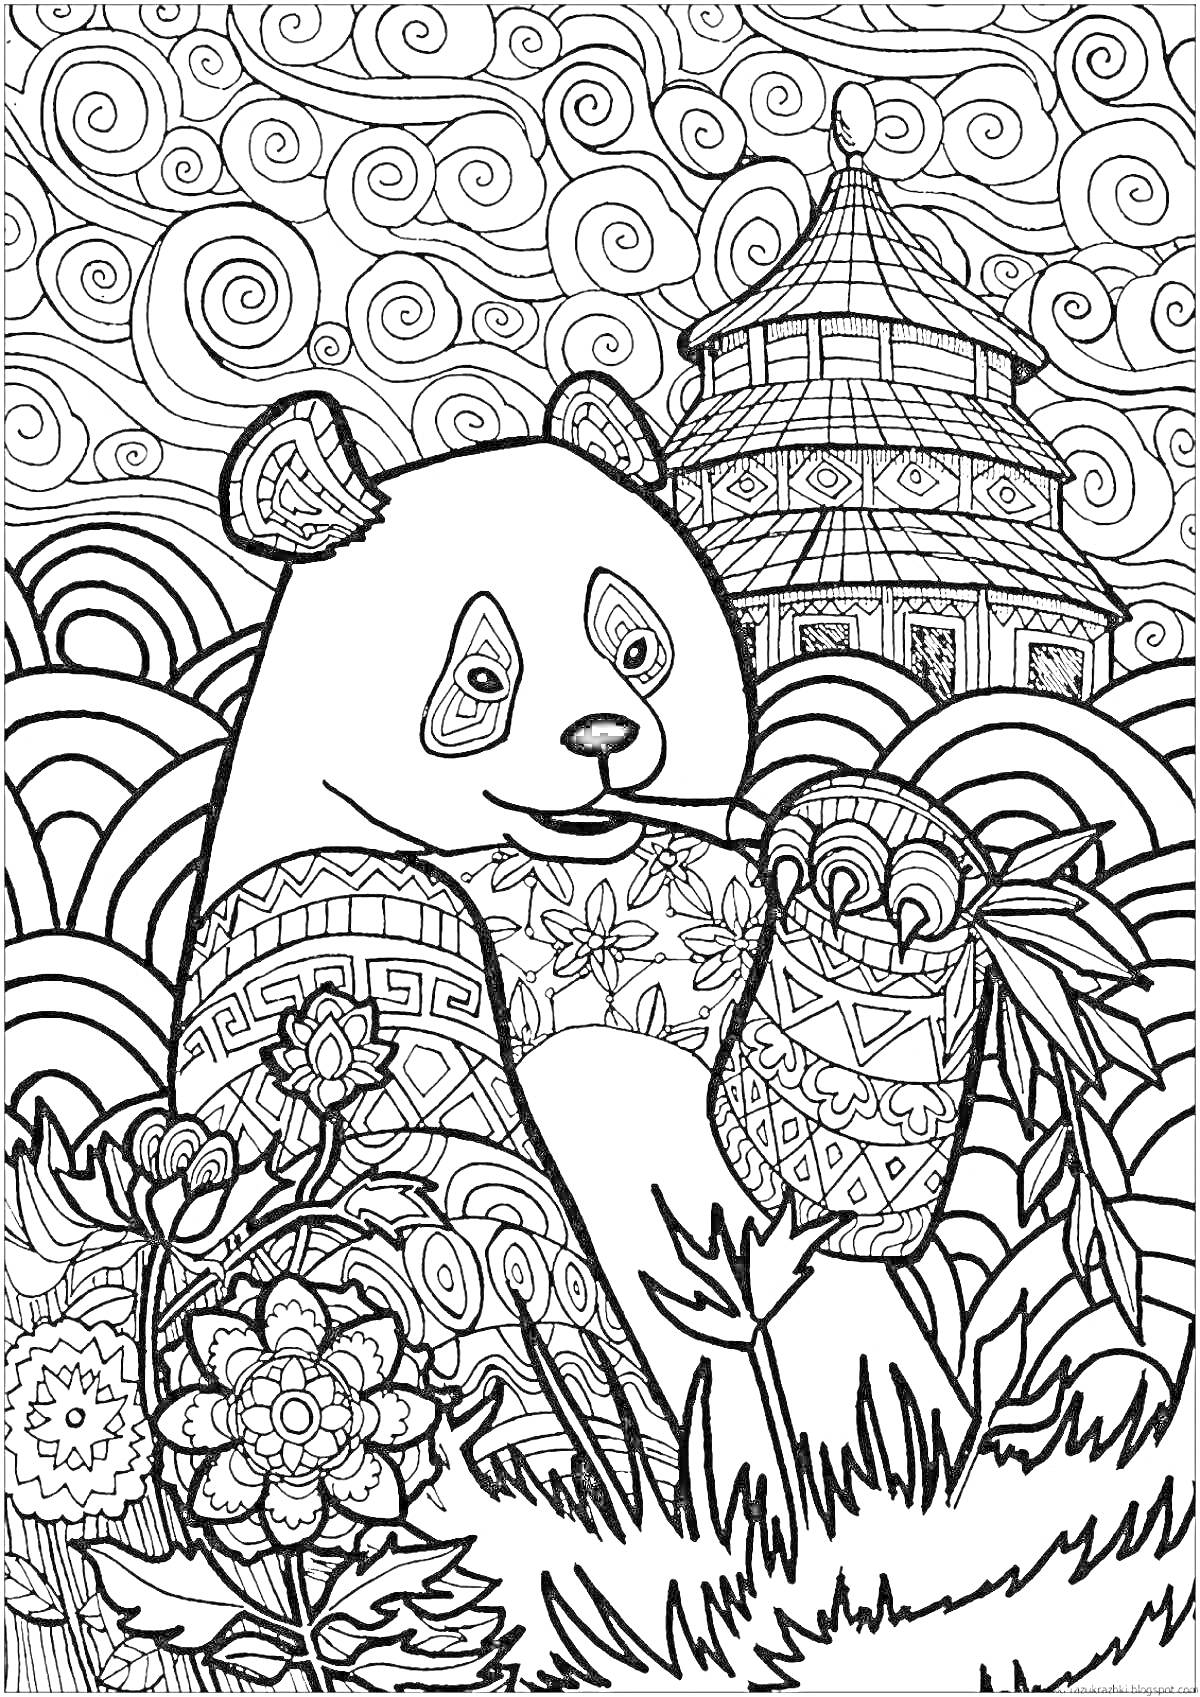 Раскраска Панда с узорчатым бамбуком и пагодой на фоне, цветы и абстрактные завитки